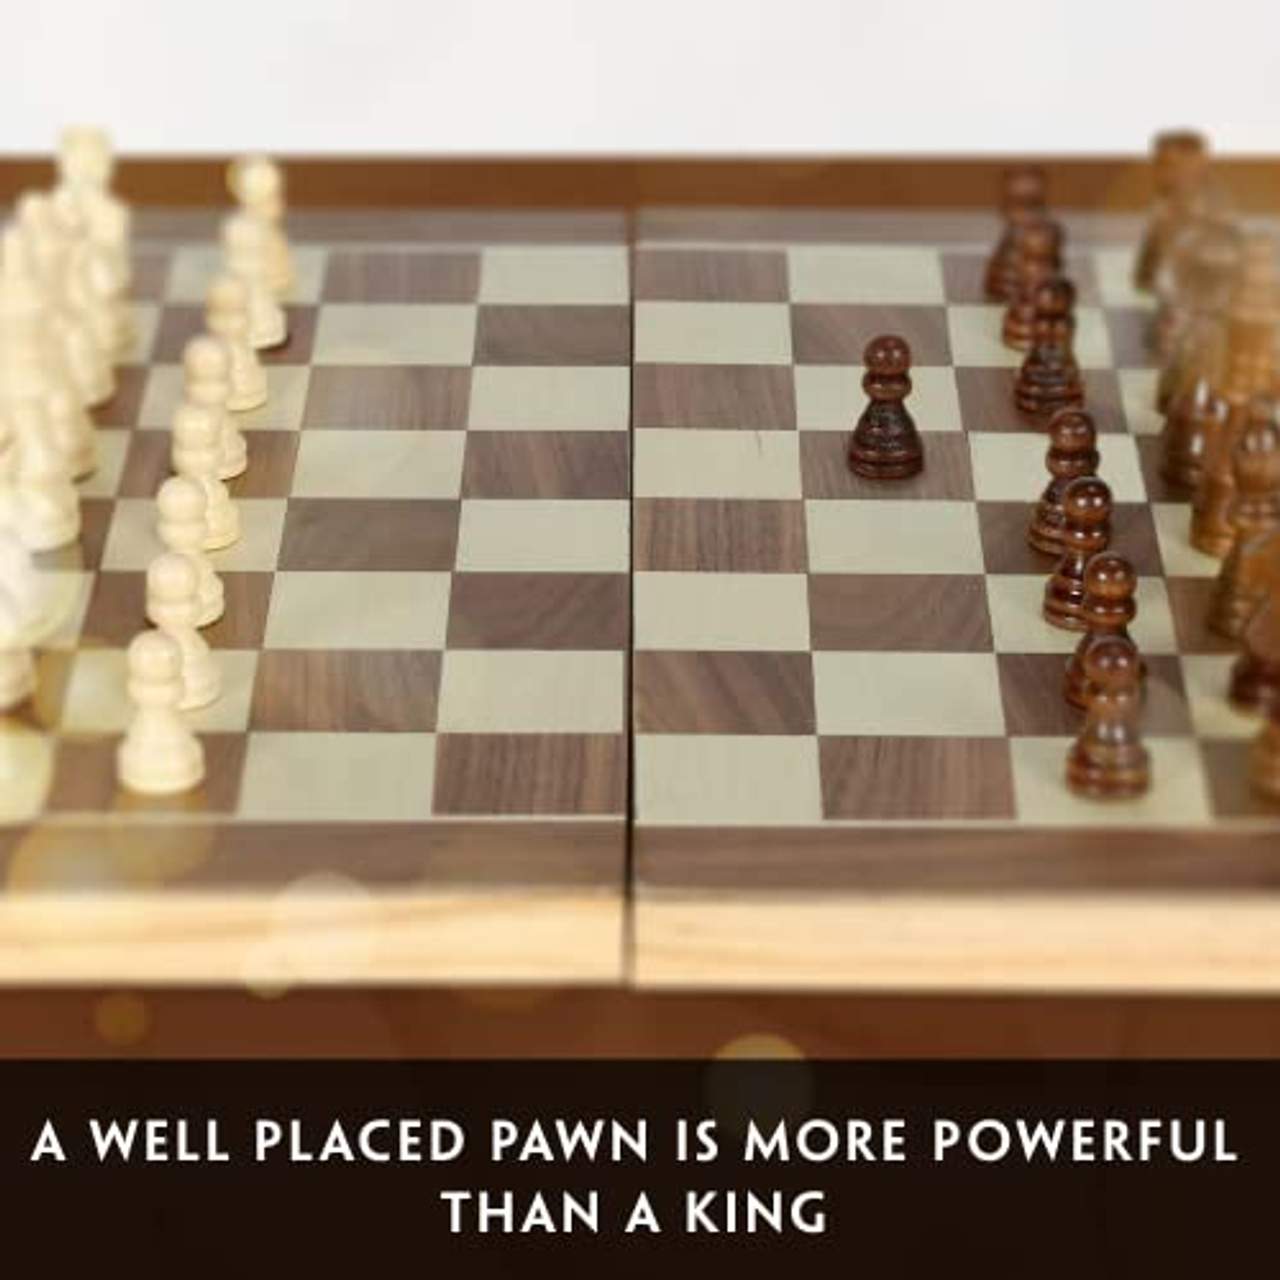 aGreatLife Königliches Schachspiel aus Holz handgefertigt